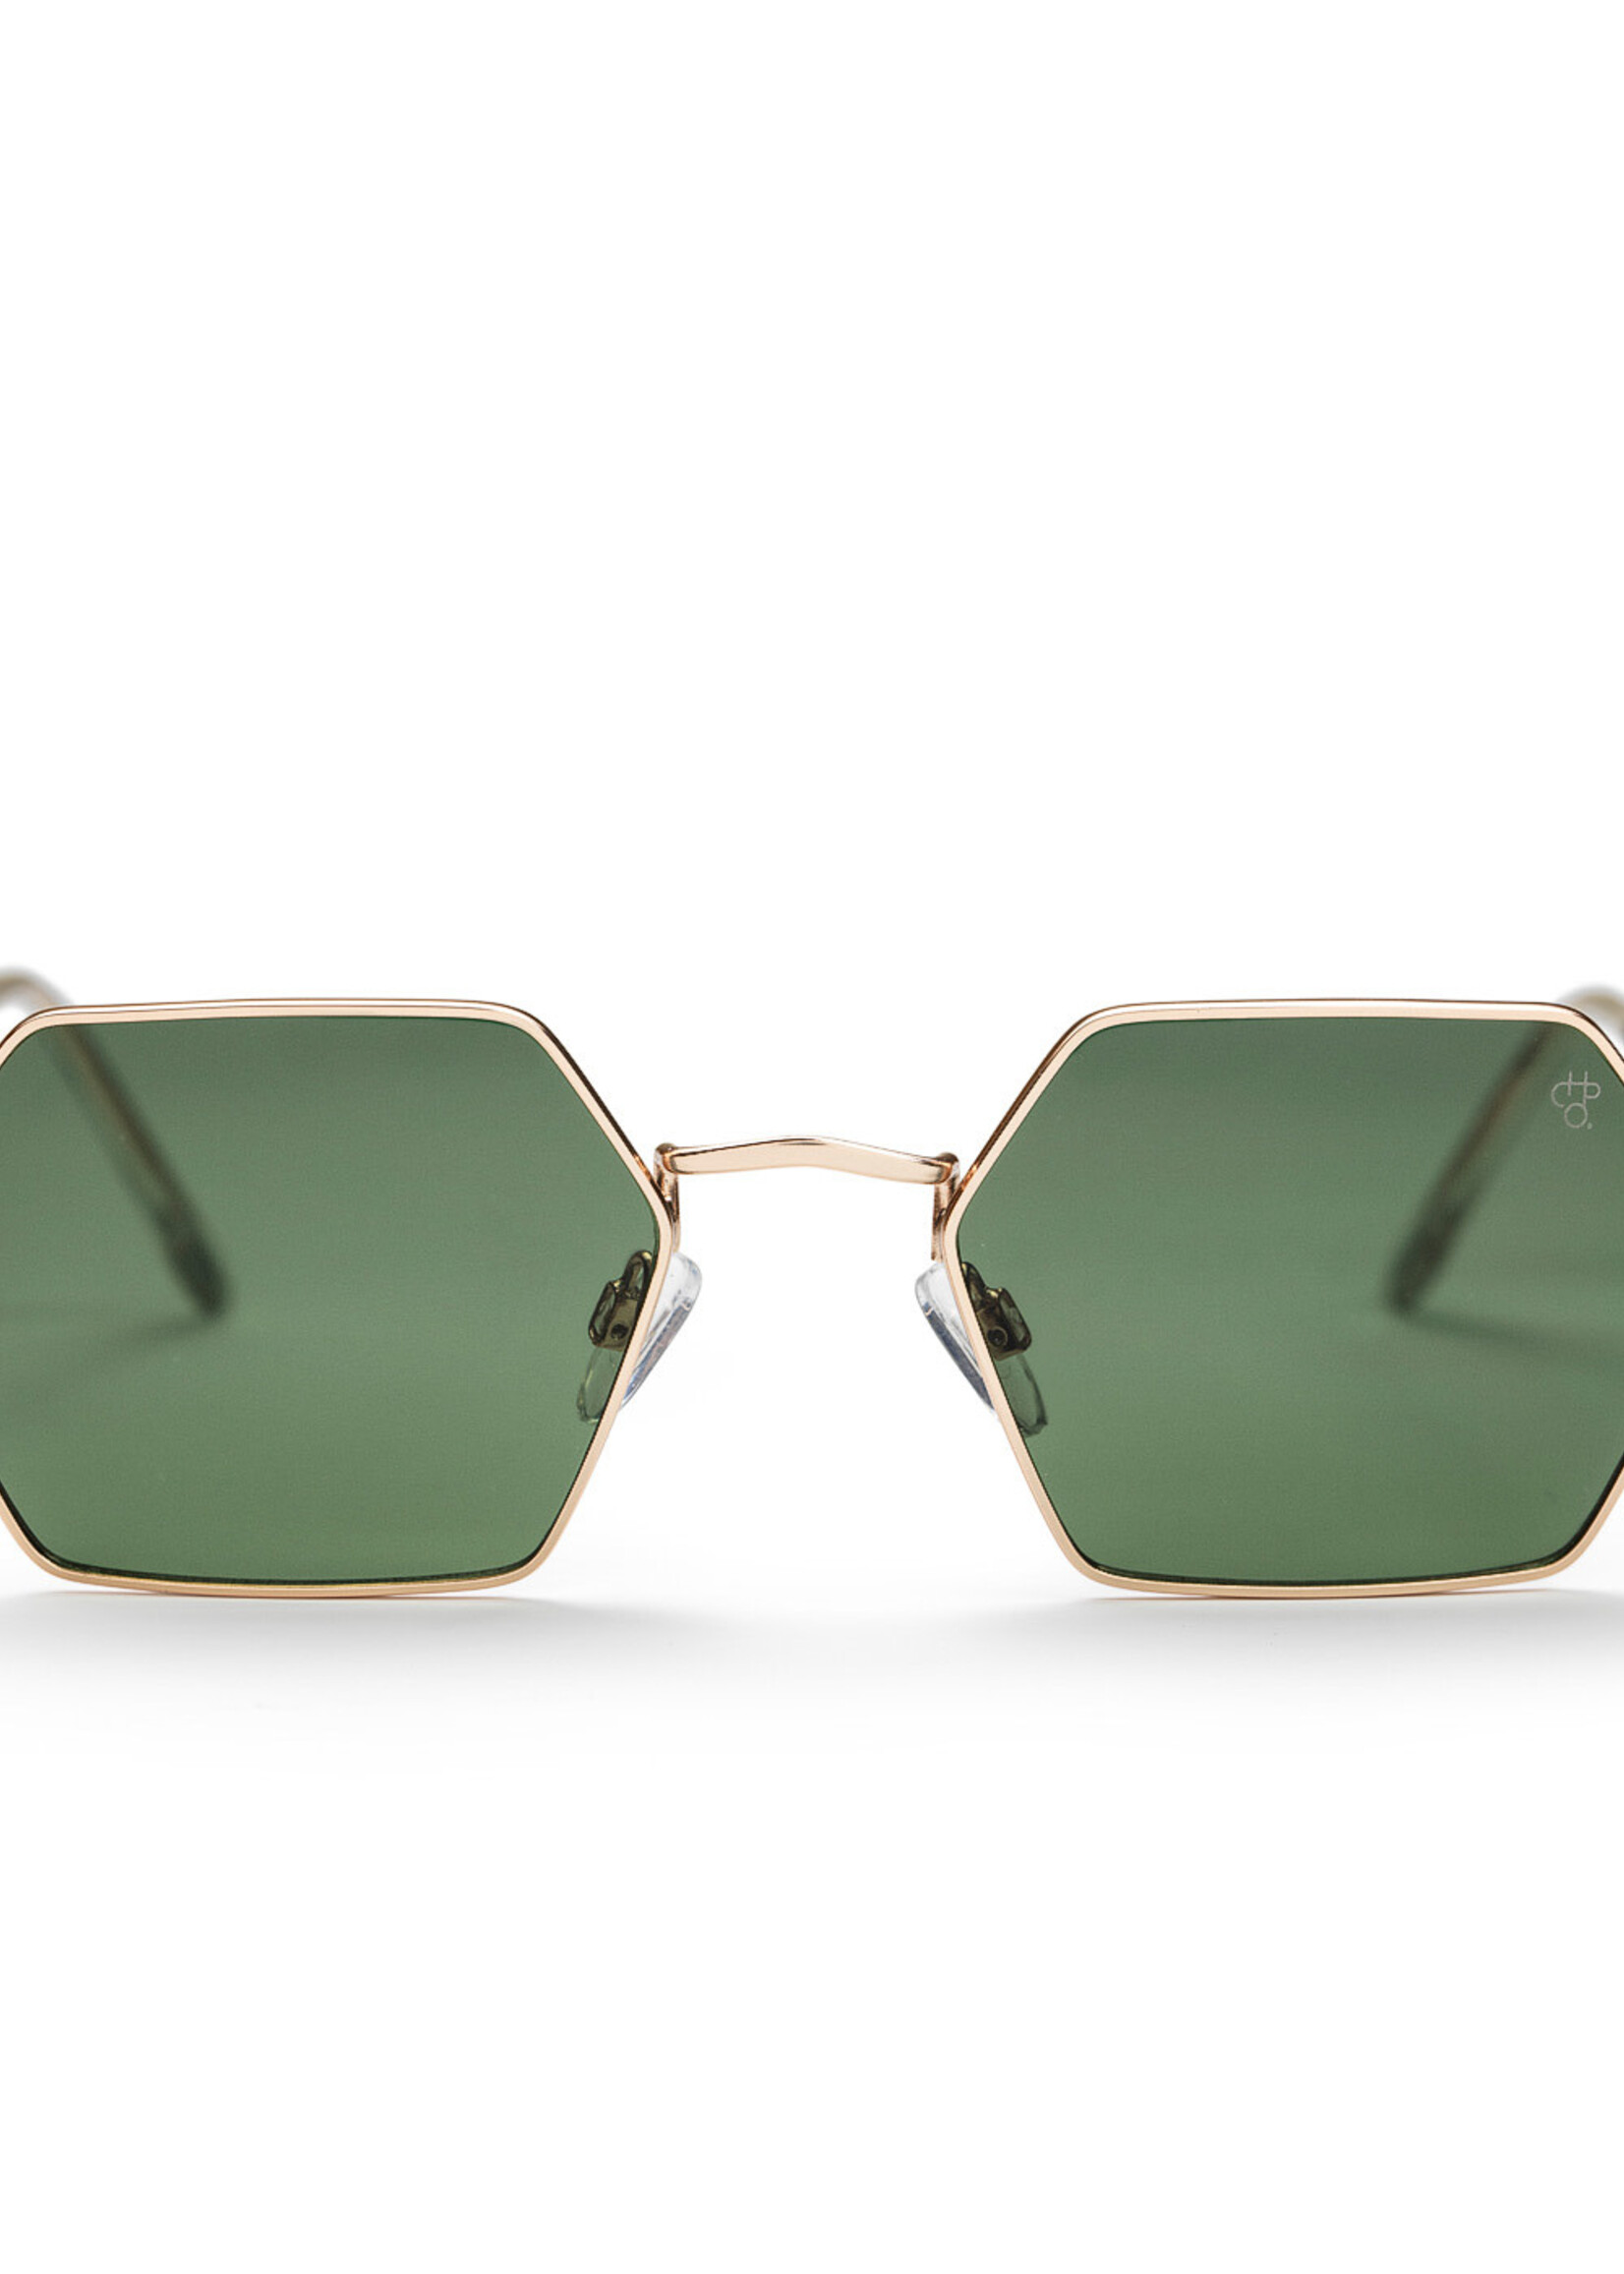 CHPO Brand Sunglasses Jason Gold Green